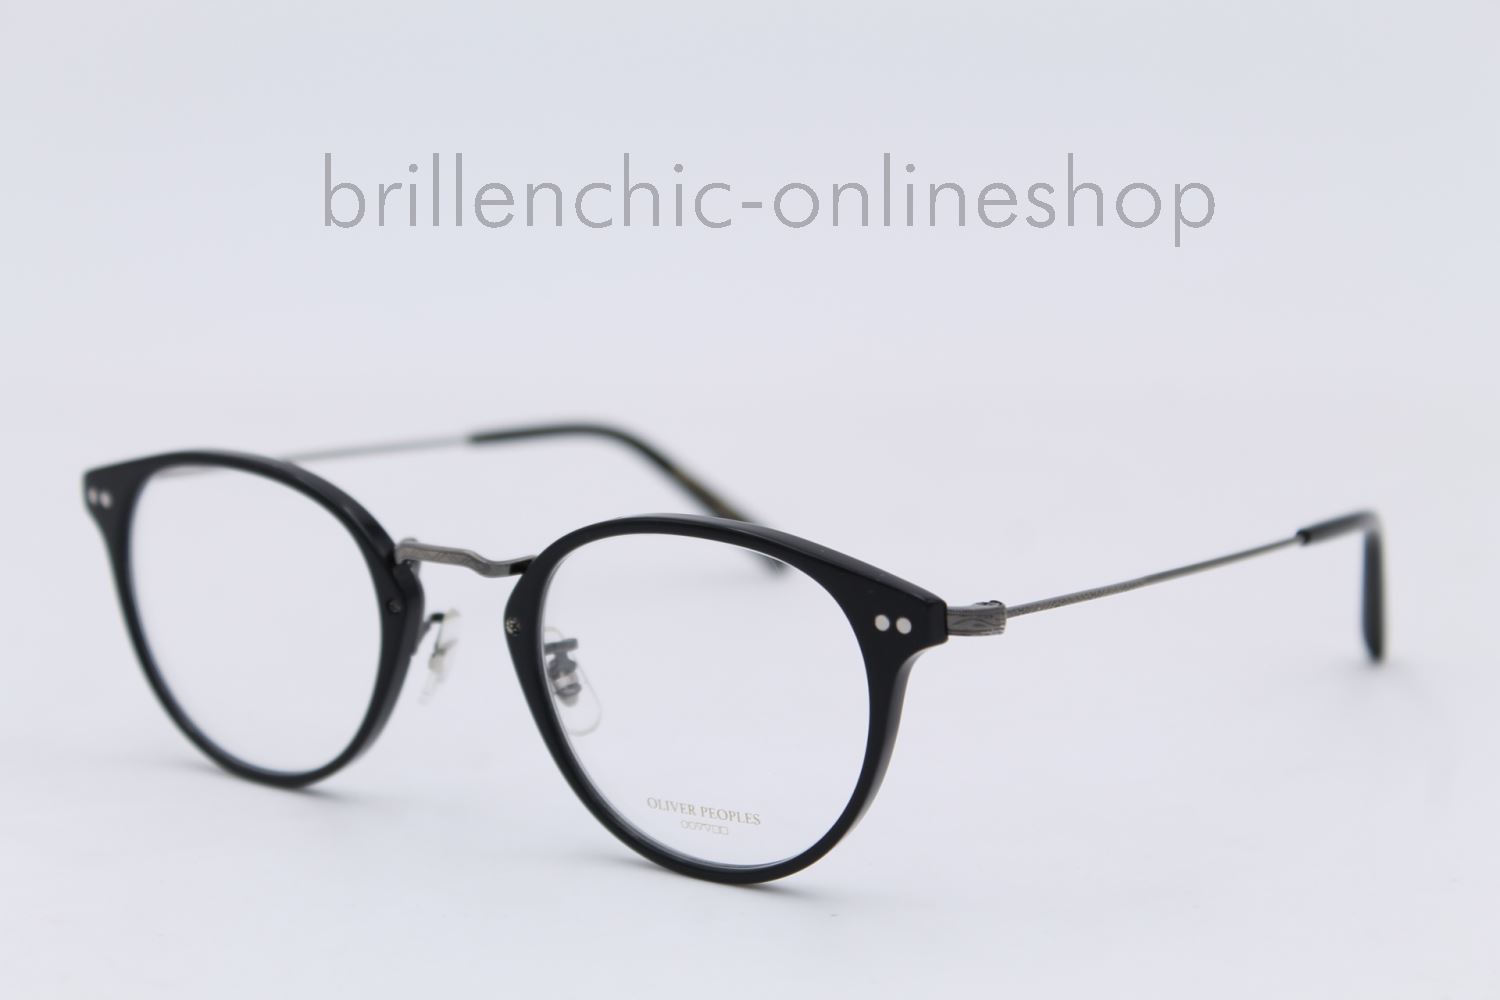 Brillenchic - onlineshop Berlin Ihr starker Partner für exklusive Brillen  online kaufen/OLIVER PEOPLES CODEE OV 5423U 5423 1681 exklusiv im  Brillenchic-Onlineshop